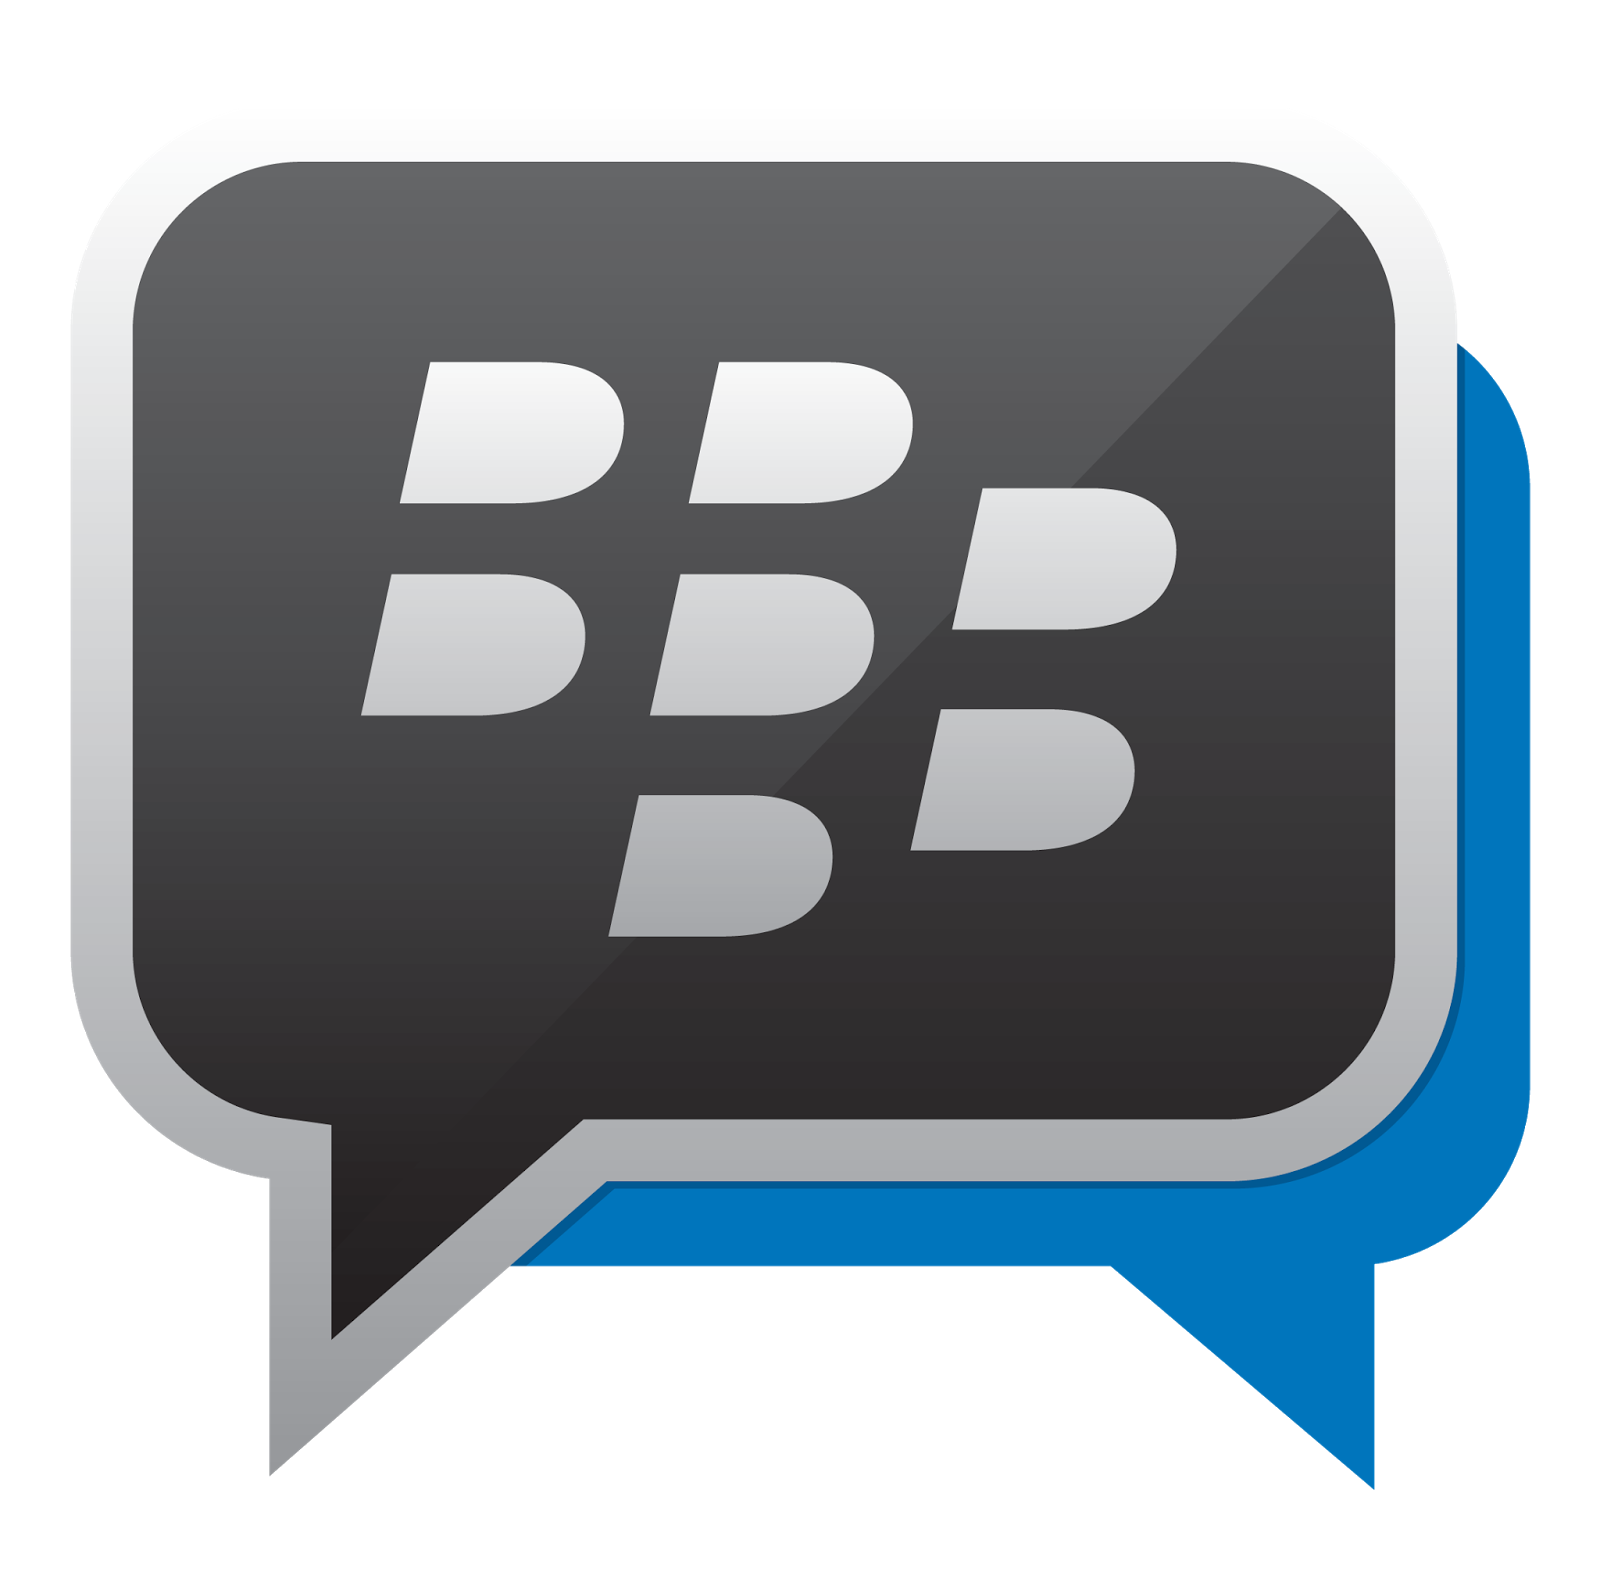 Logo Bbm Blackberry Messenger Logodesain